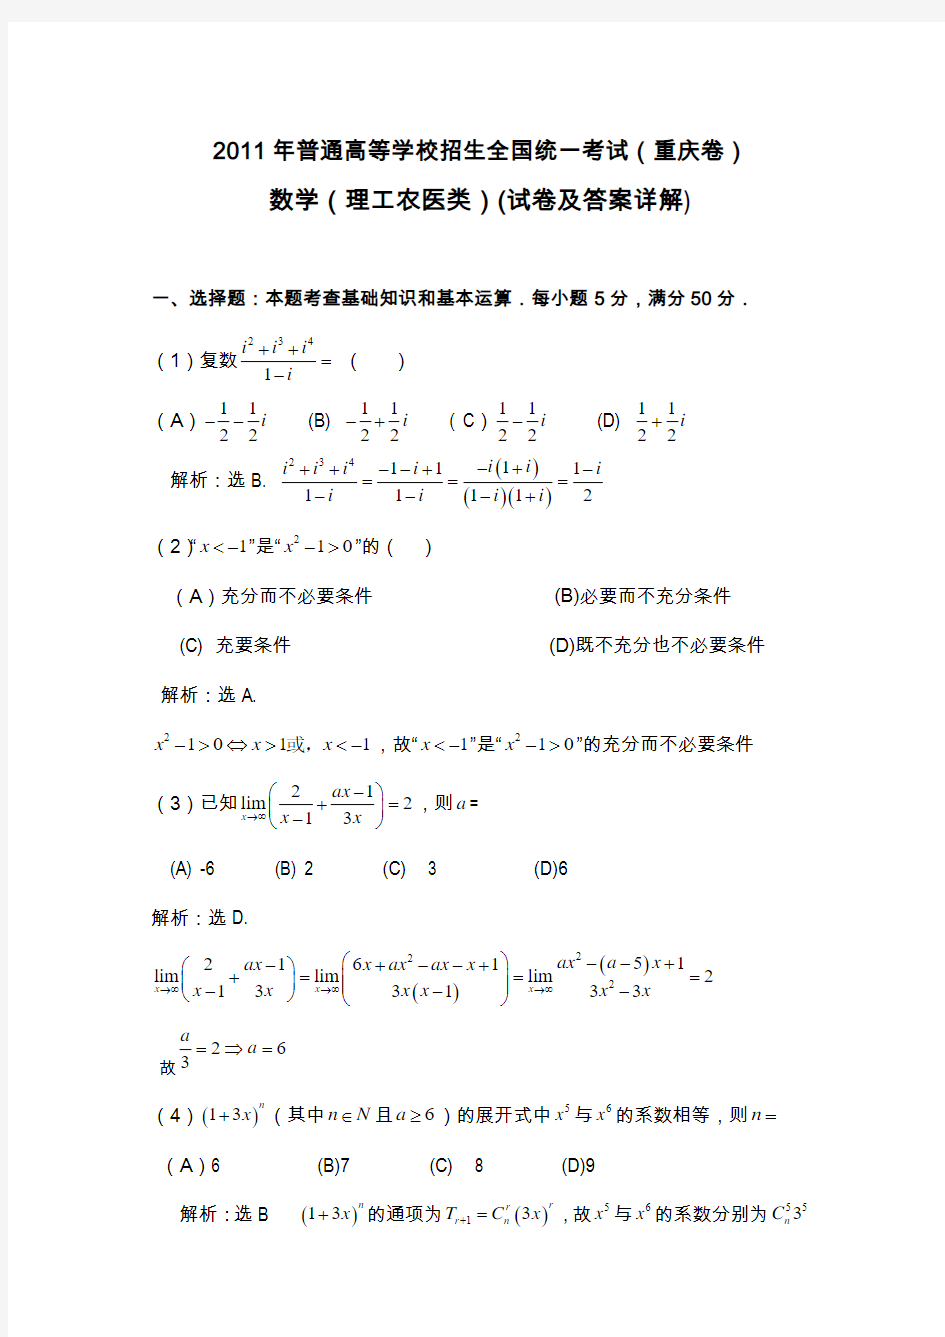 2011年重庆高考理科数学试卷及答案详解_WORD版(答案超级详细)